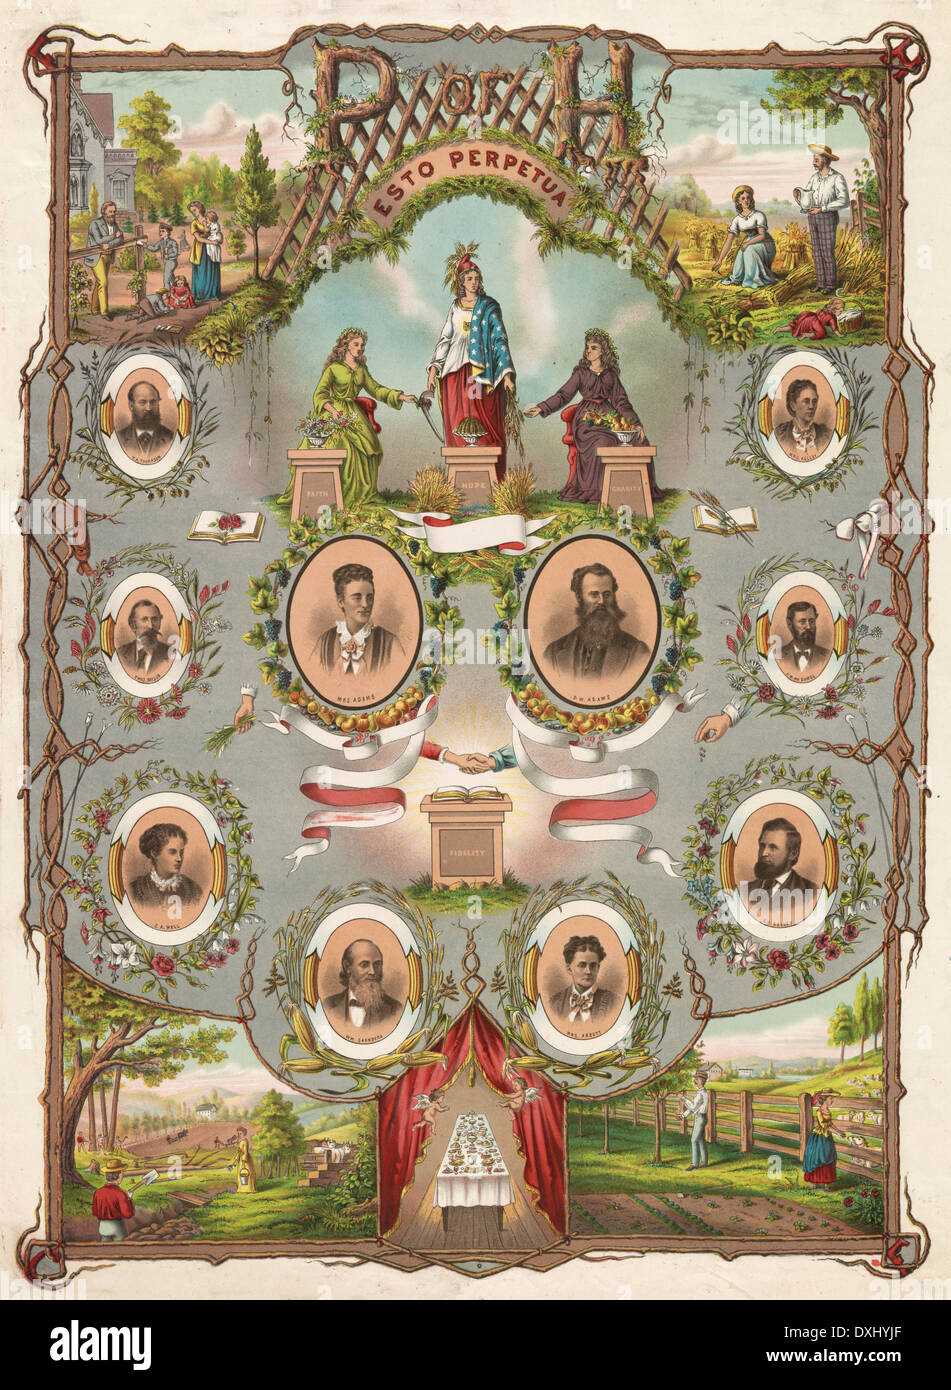 Mecenas de la cría (P DE H) - Esto Perpetua - poster, circa 1875 Foto de stock